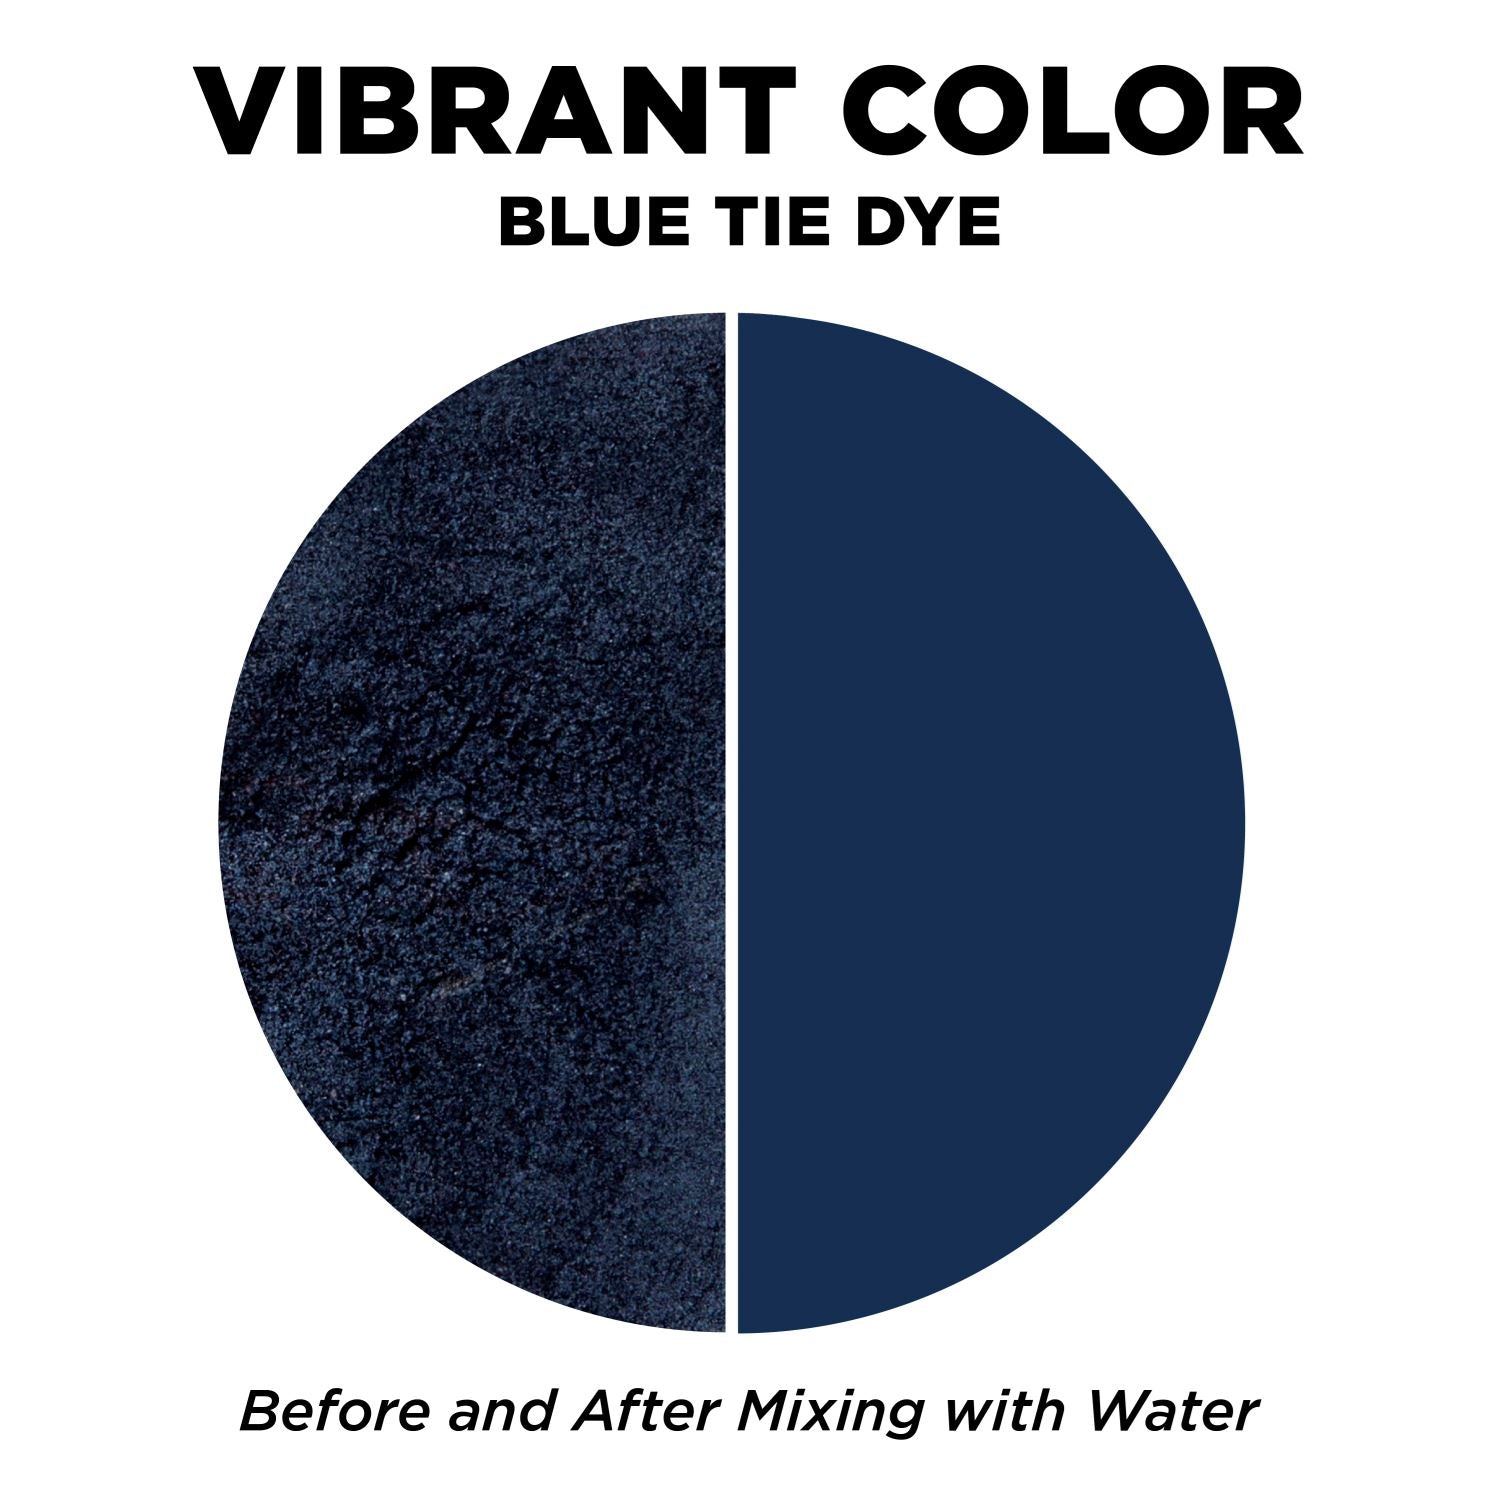 Blue Colors Tie Dye Kit in Beach Bum Blue Tie Dye - Custom